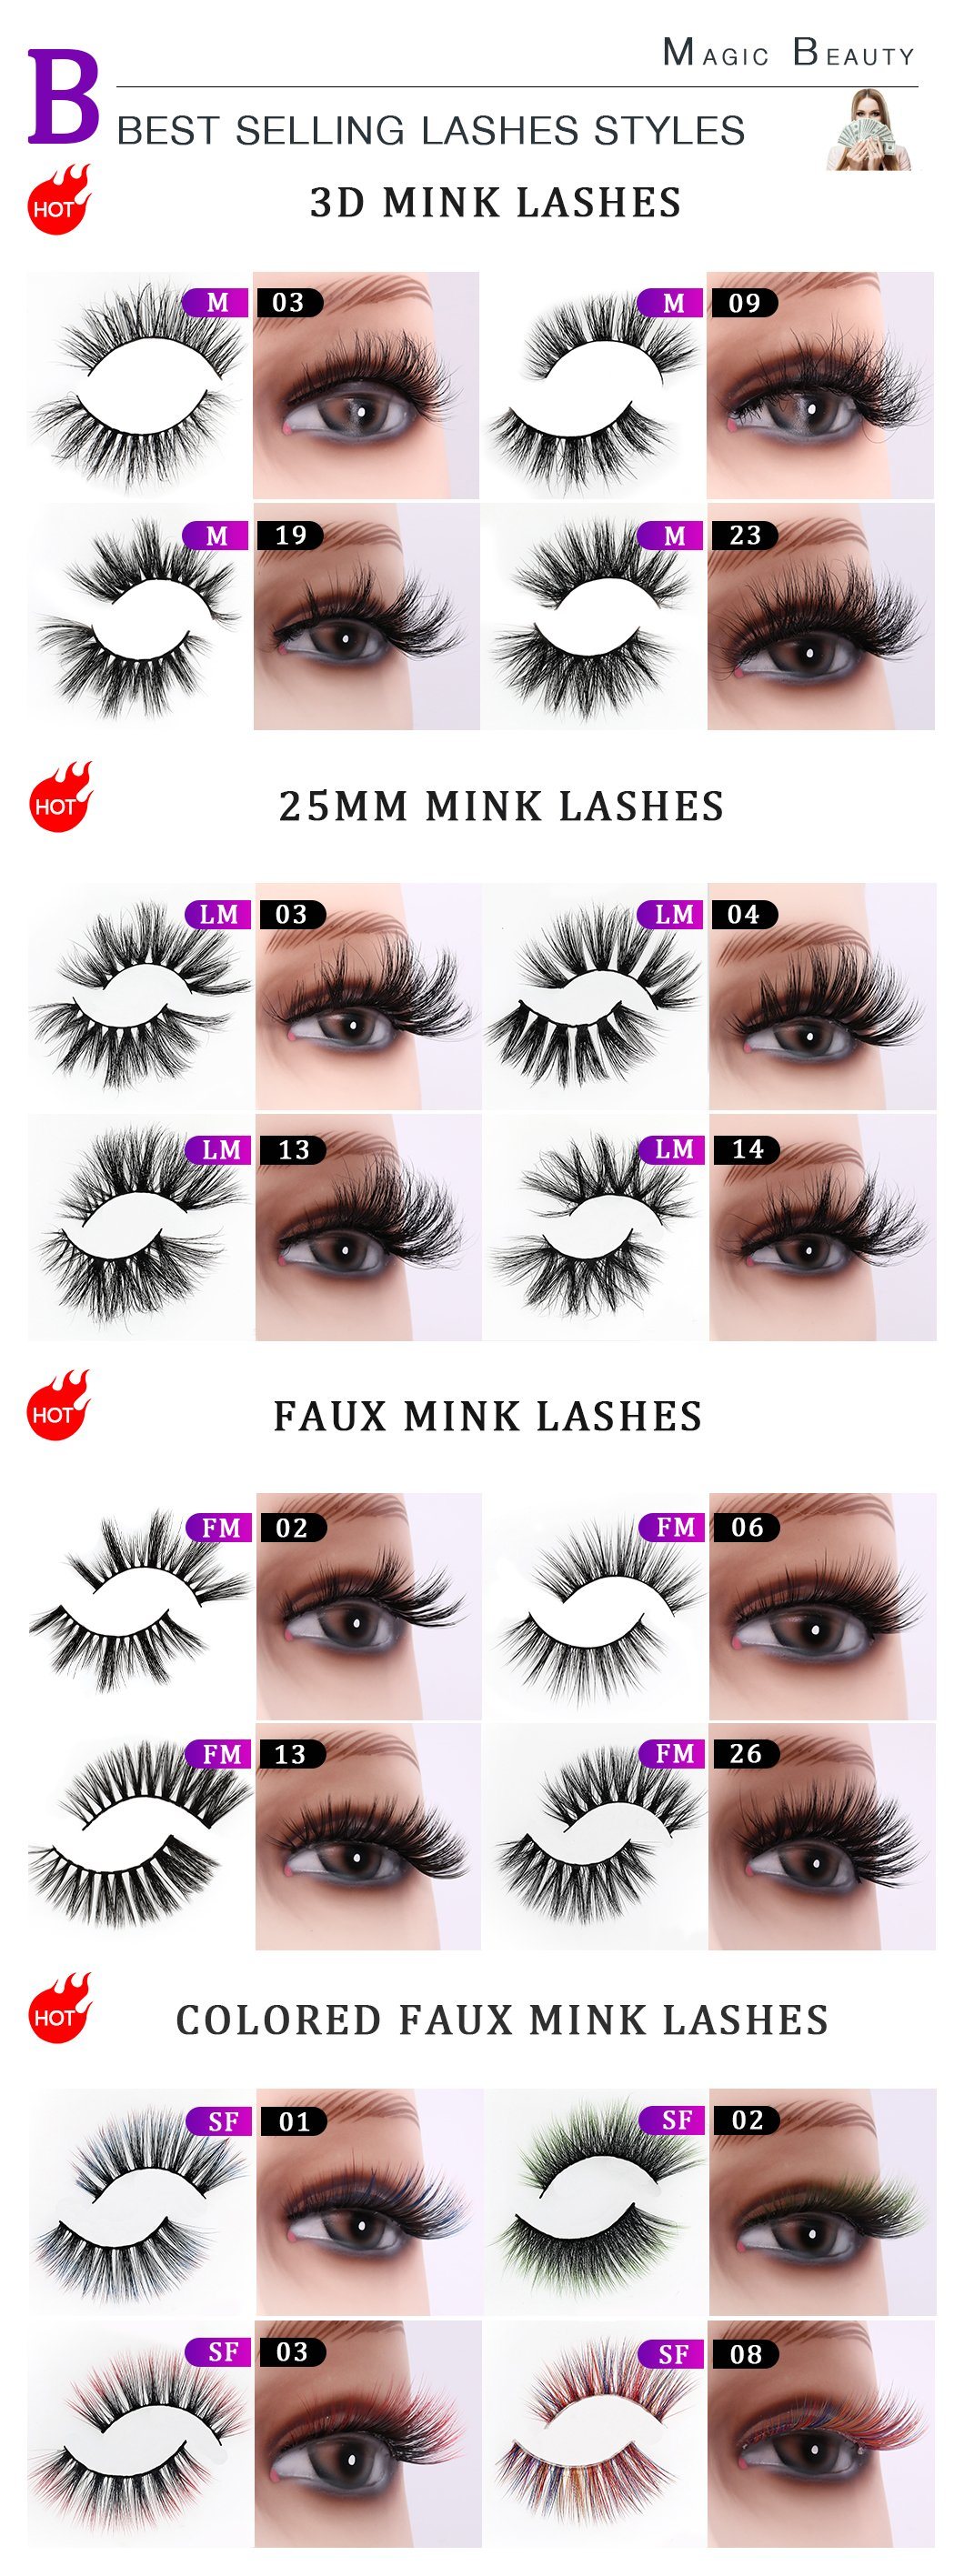 Hot Selling Color Eyelashes Premium High Quality Eyelash Wholesale Price Colorful Faux Mink Eyelashes for Makeup